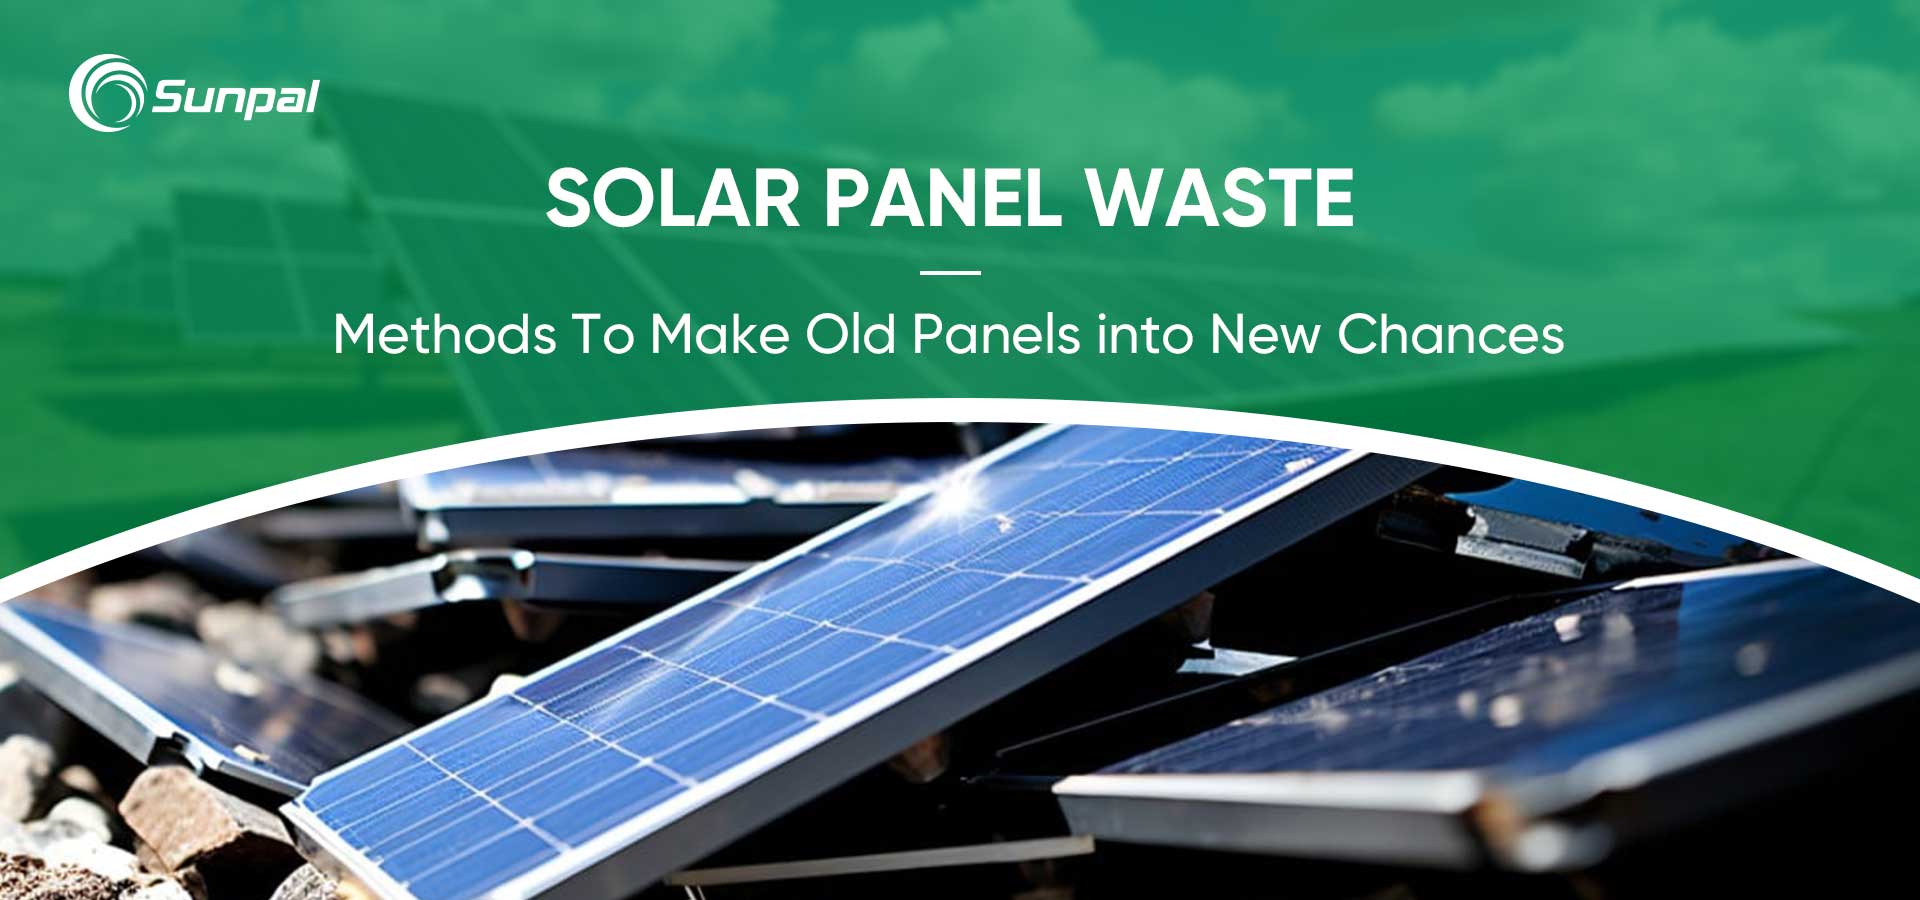 Tái chế chất thải của tấm pin mặt trời: Biến các tấm pin cũ thành cơ hội mới